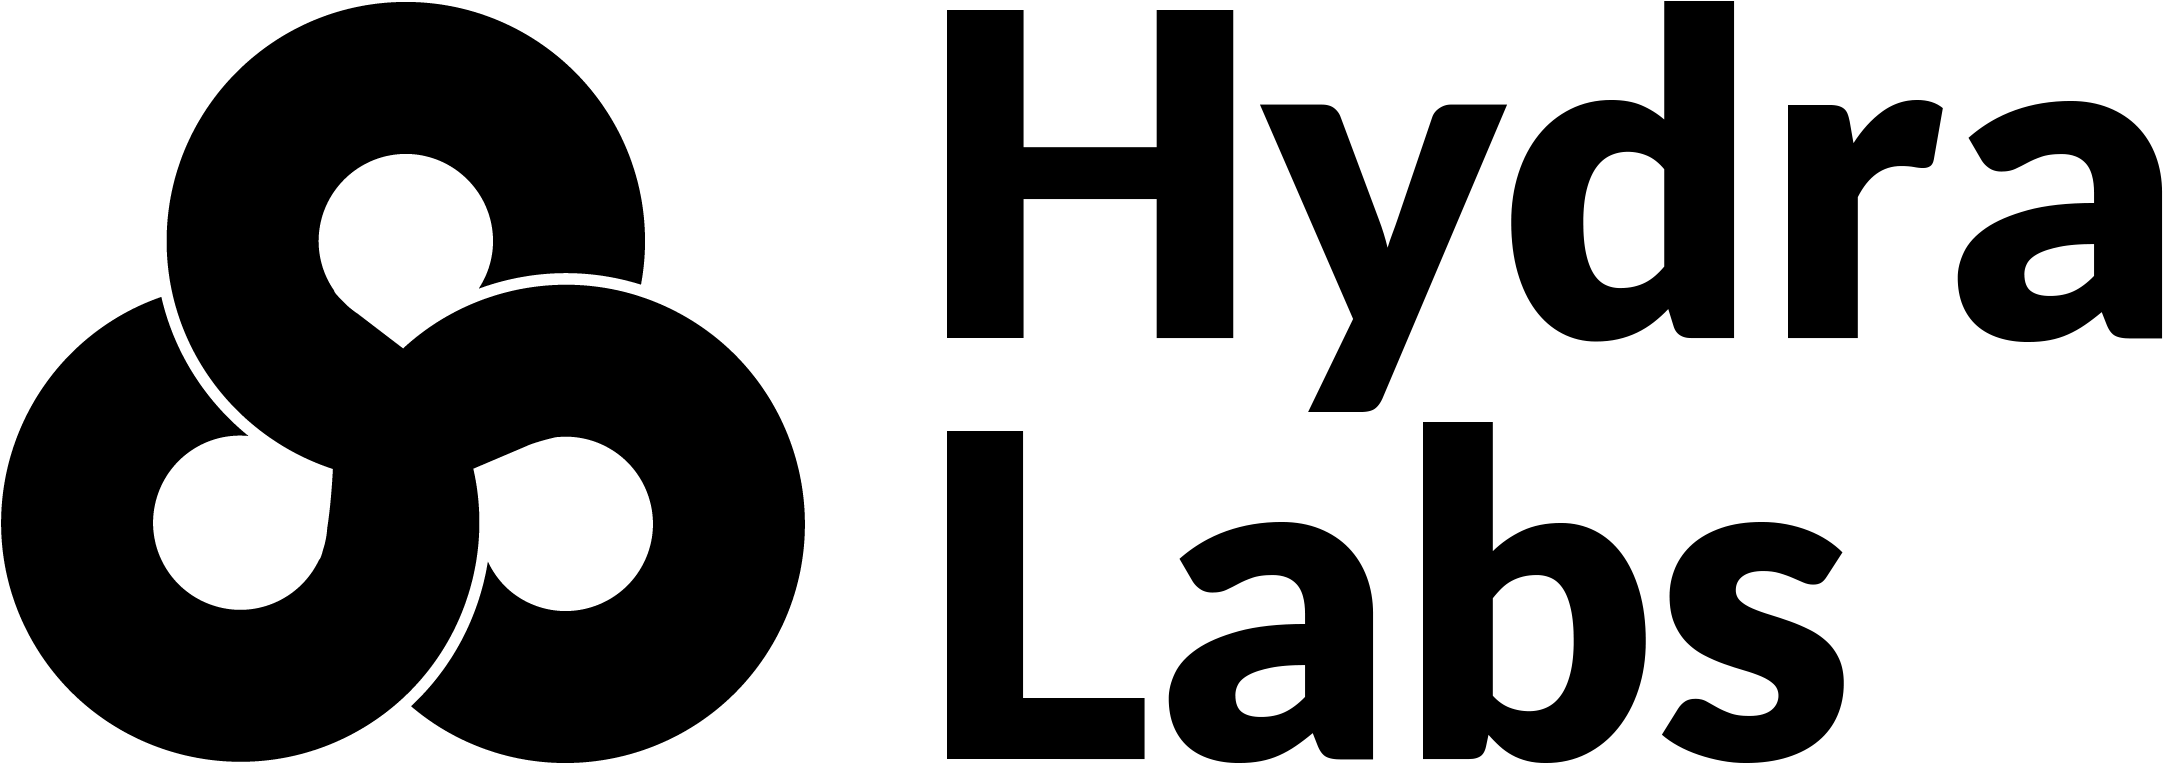 Marvel Hydra logo PNG Immagine di alta qualità